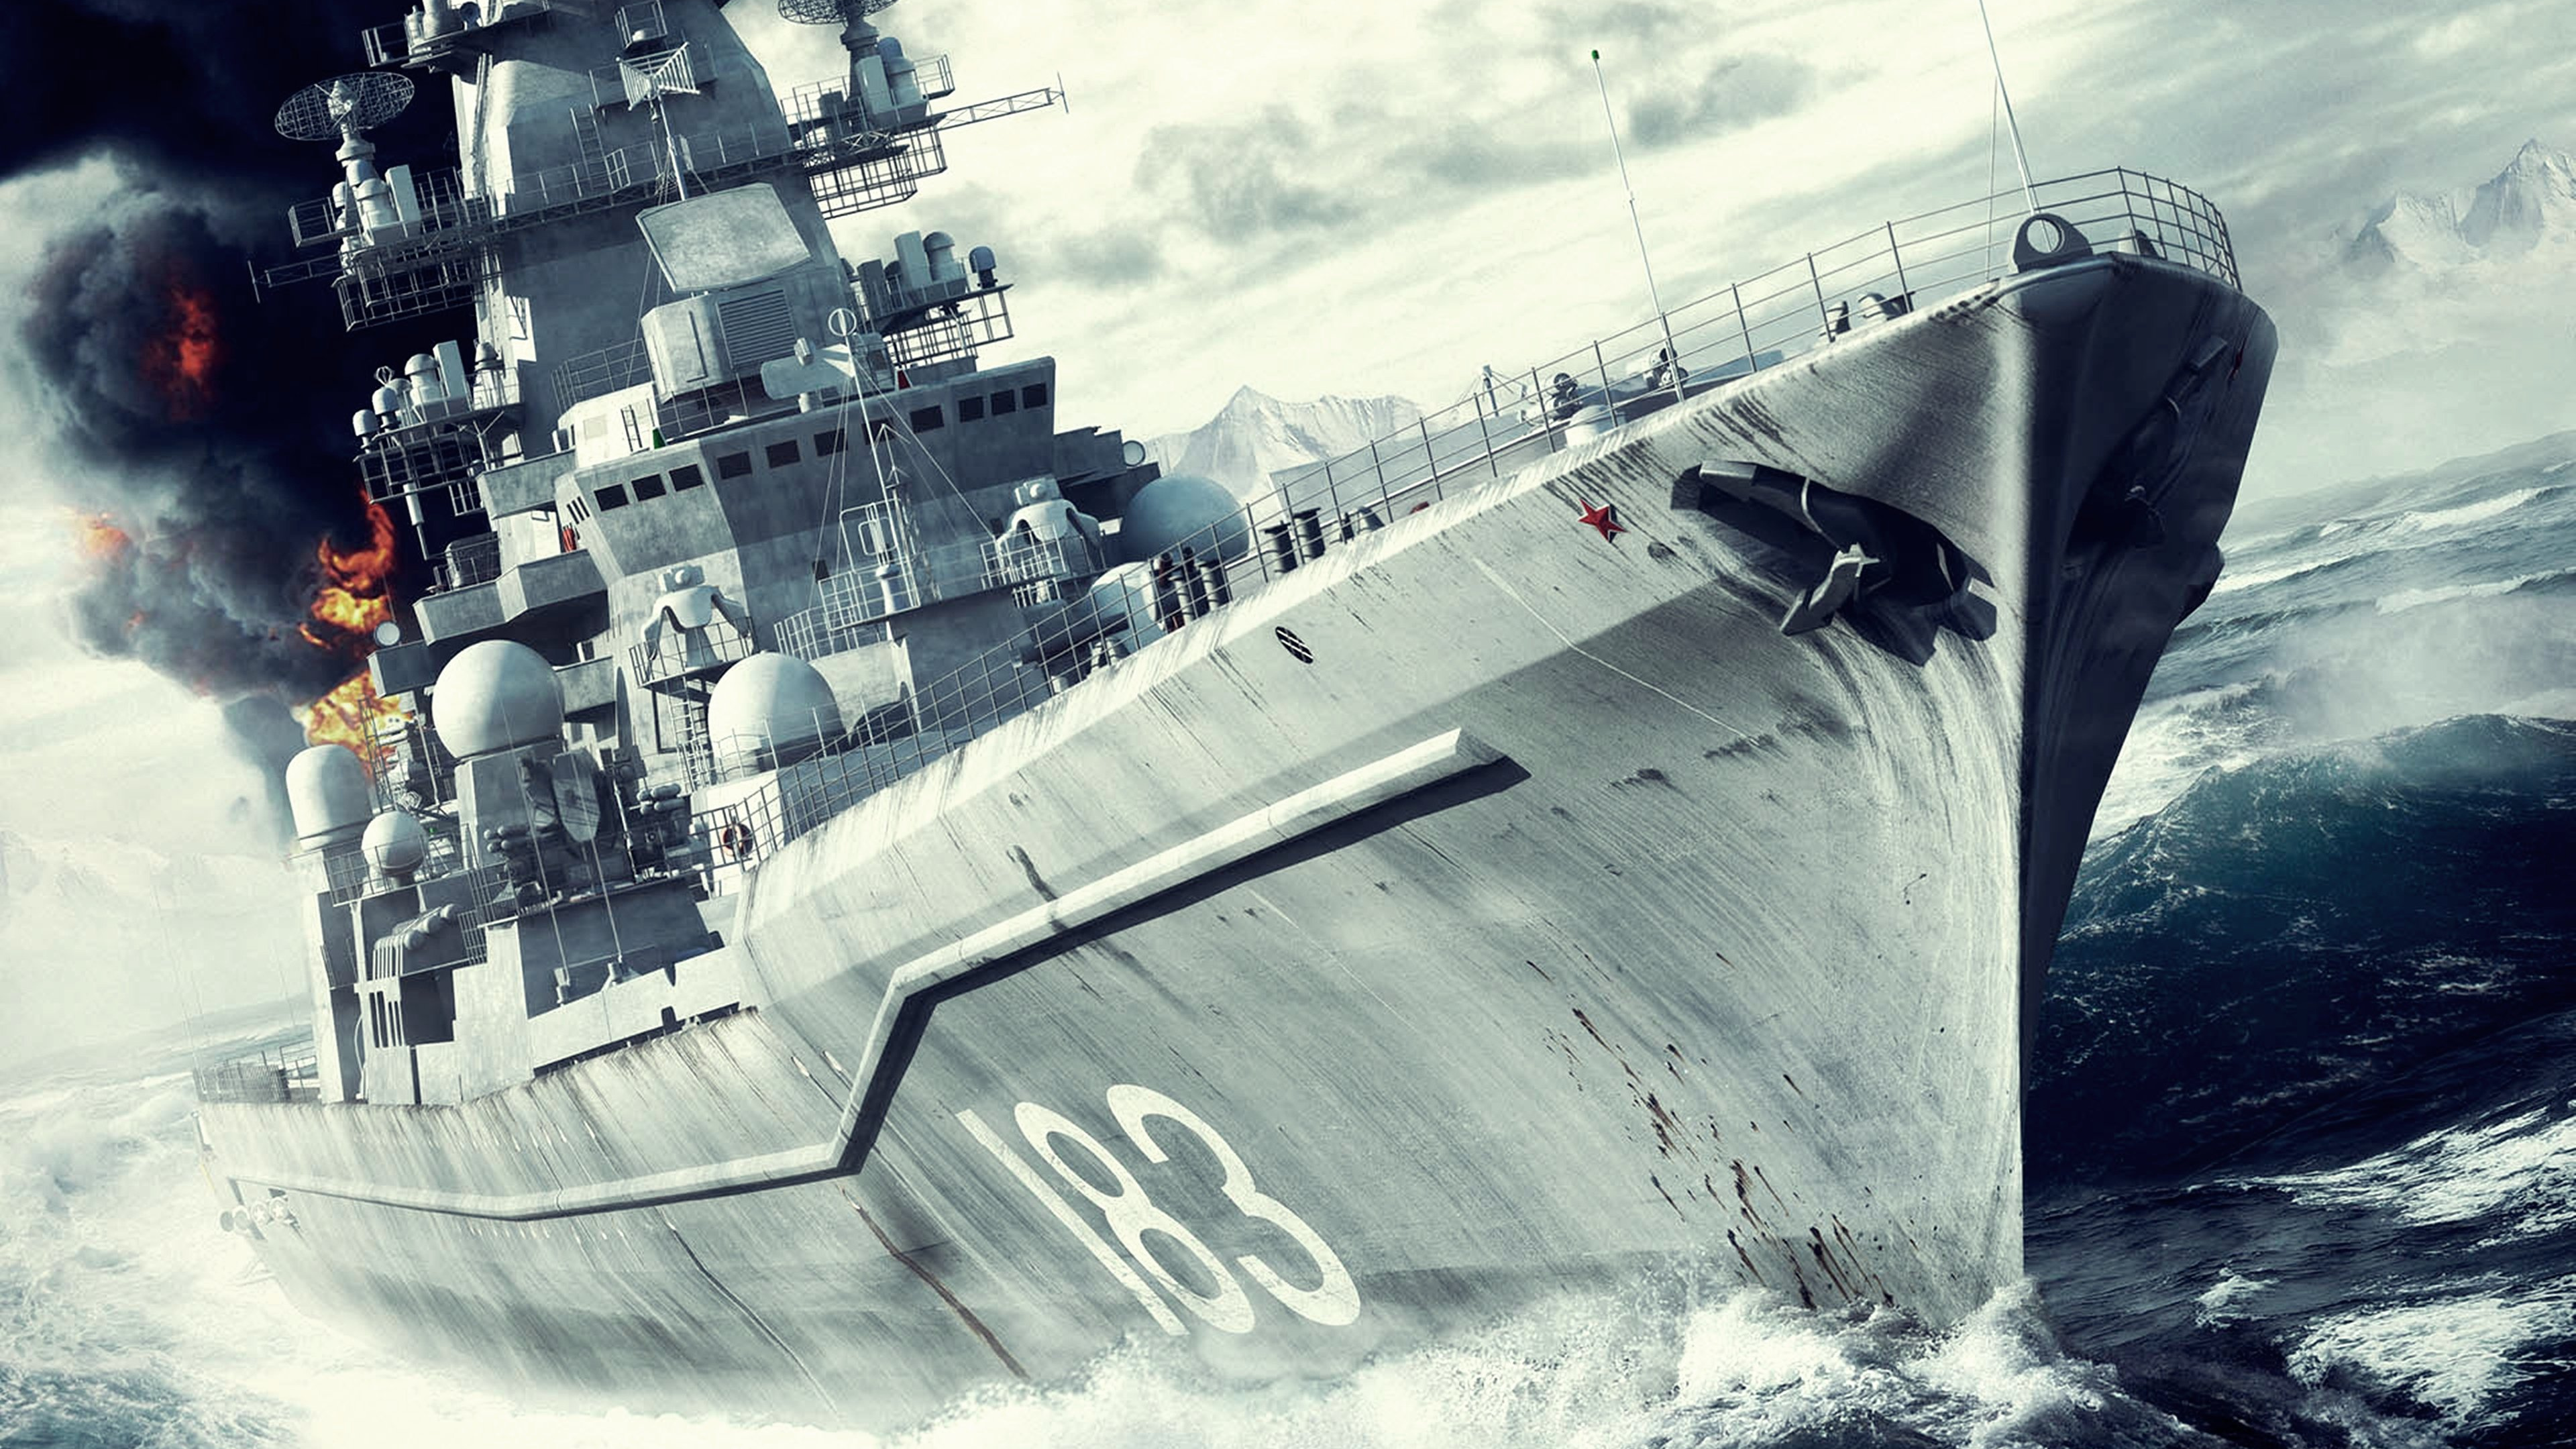 Schlachtschiff, Marine-Schiff, Kriegsschiff, Kreuzer, Zerst. Wallpaper in 3840x2160 Resolution